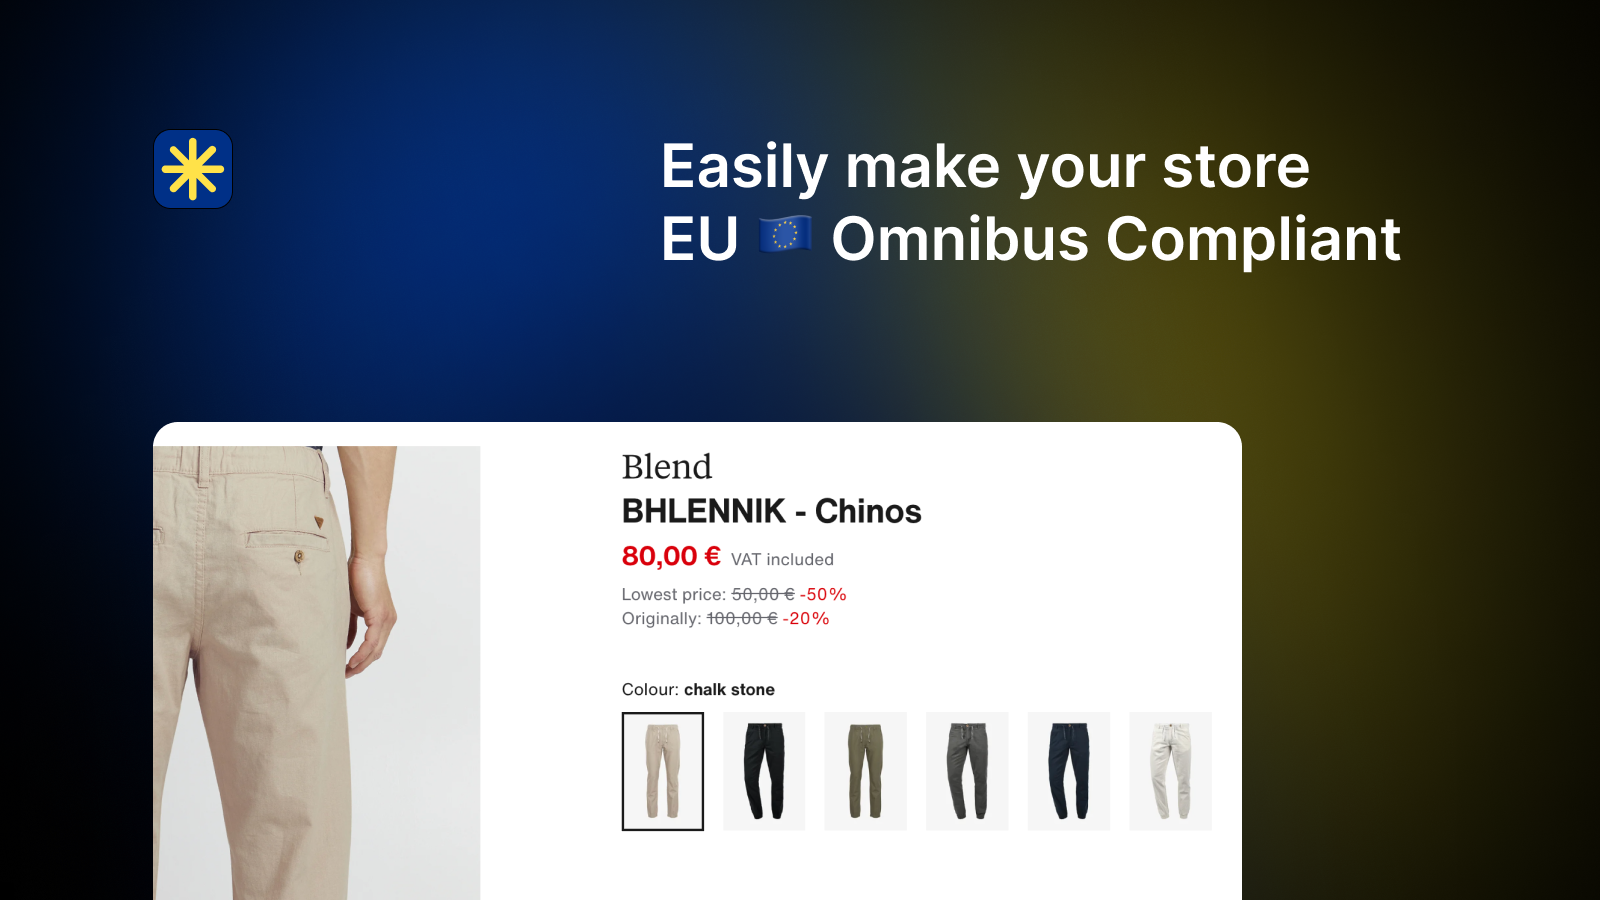 Gör enkelt din butik förenlig med EU:s Omniubs